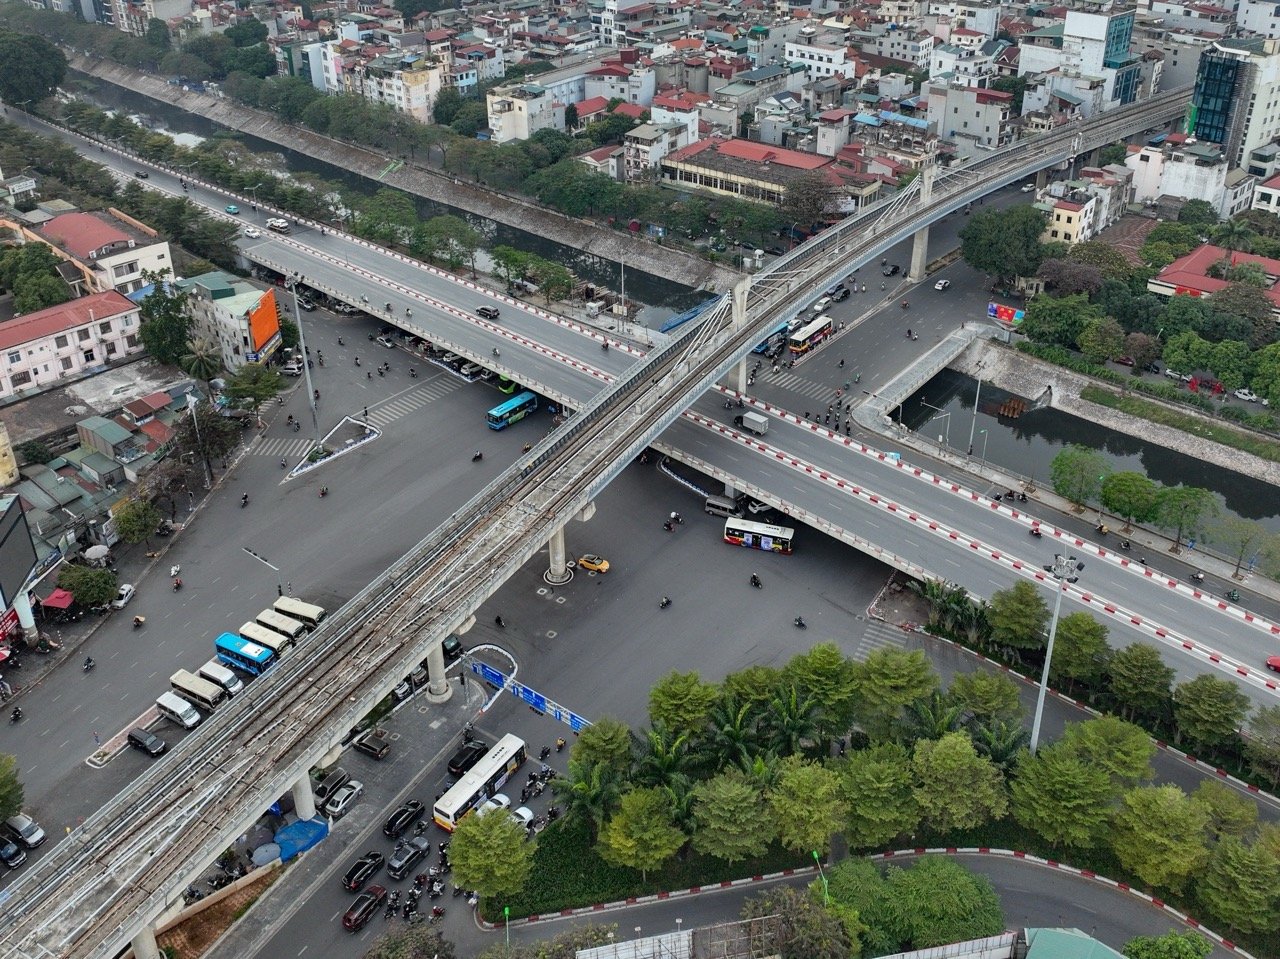 Dự án đường sắt đô thị Nhổn - ga Hà Nội dài 12,5km, đi qua 8 ga trên cao và 4 ga ngầm, trong đó đoạn trên cao Nhổn - Cầu Giấy dài 8,5km và đoạn đi ngầm Cầu Giấy - ga Hà Nội dài 4km